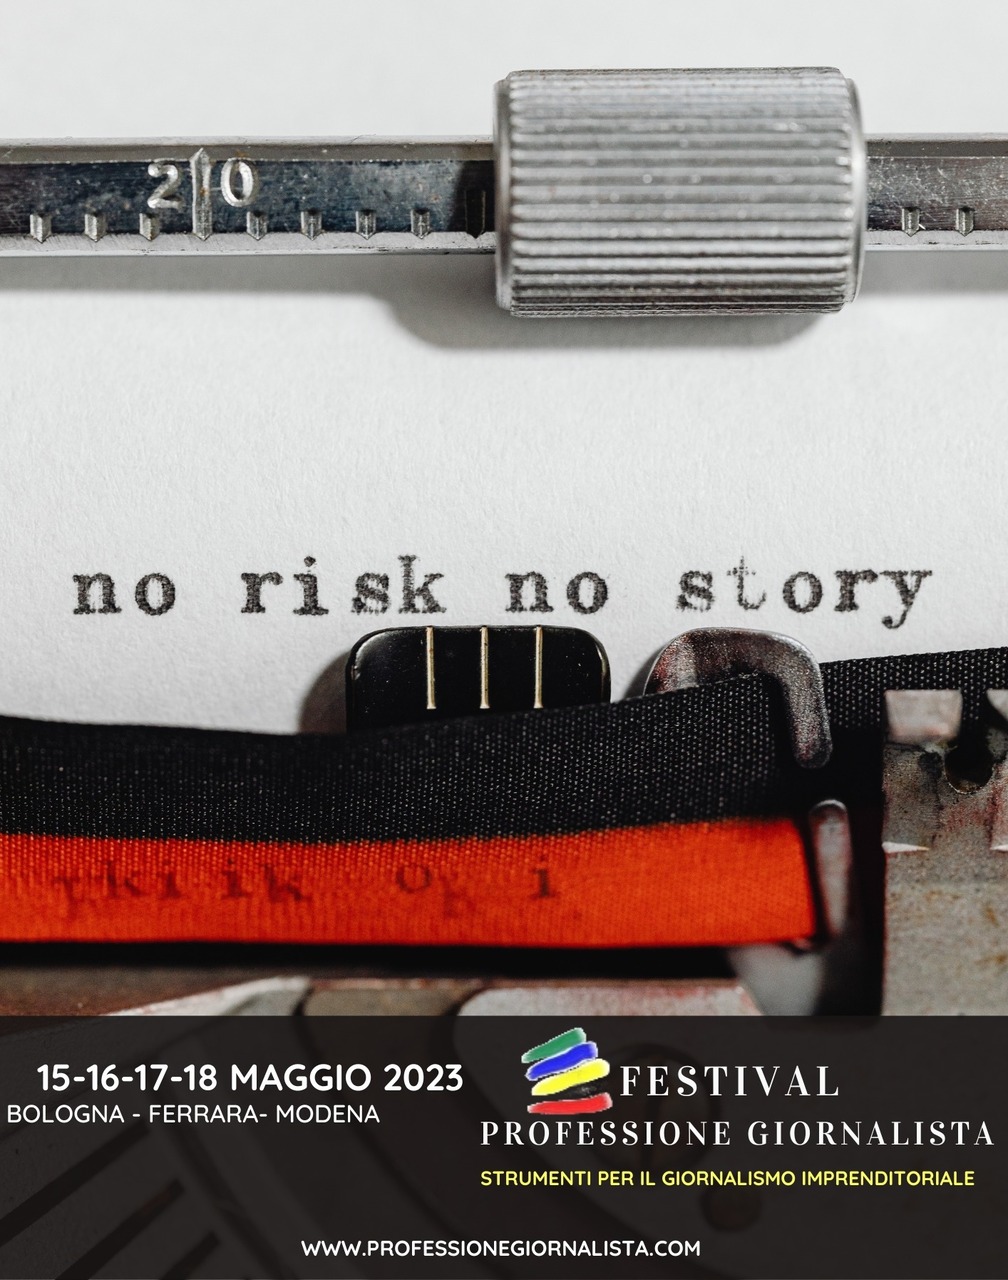 Professione del giornalista: la locandina dell’edizione 2023 del festival “Professione Giornalista” (Bologna, Ferrara, Modena, 15-16-17-18 maggio)